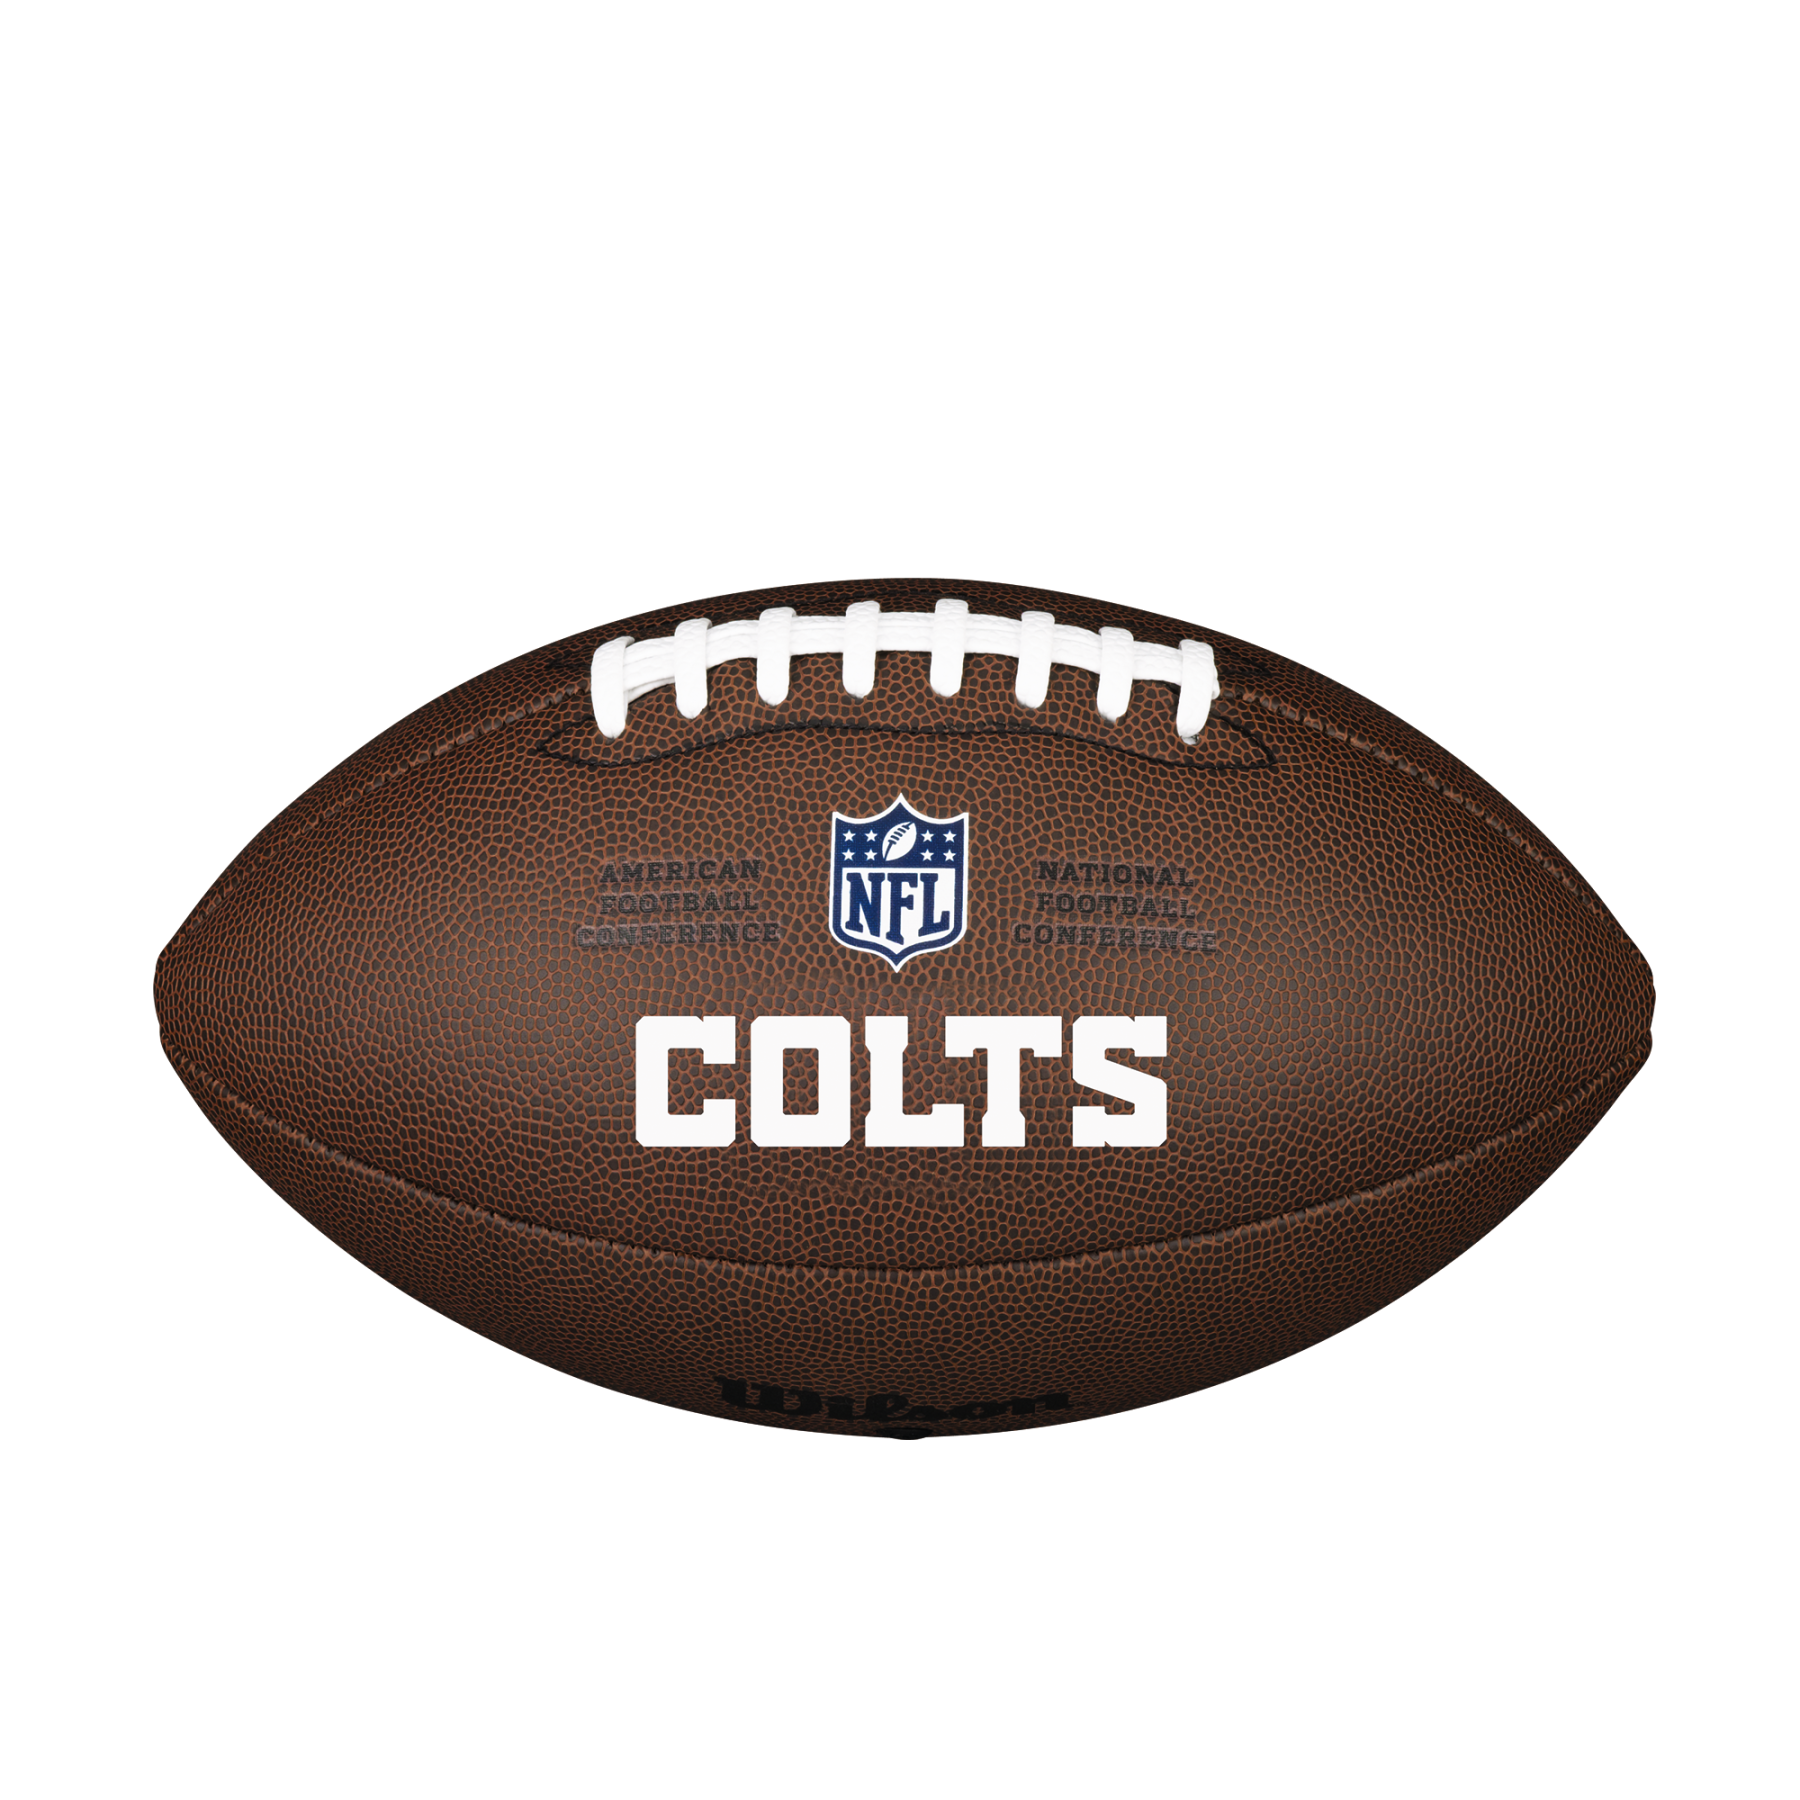 Bola Wilson Colts NFL com licença